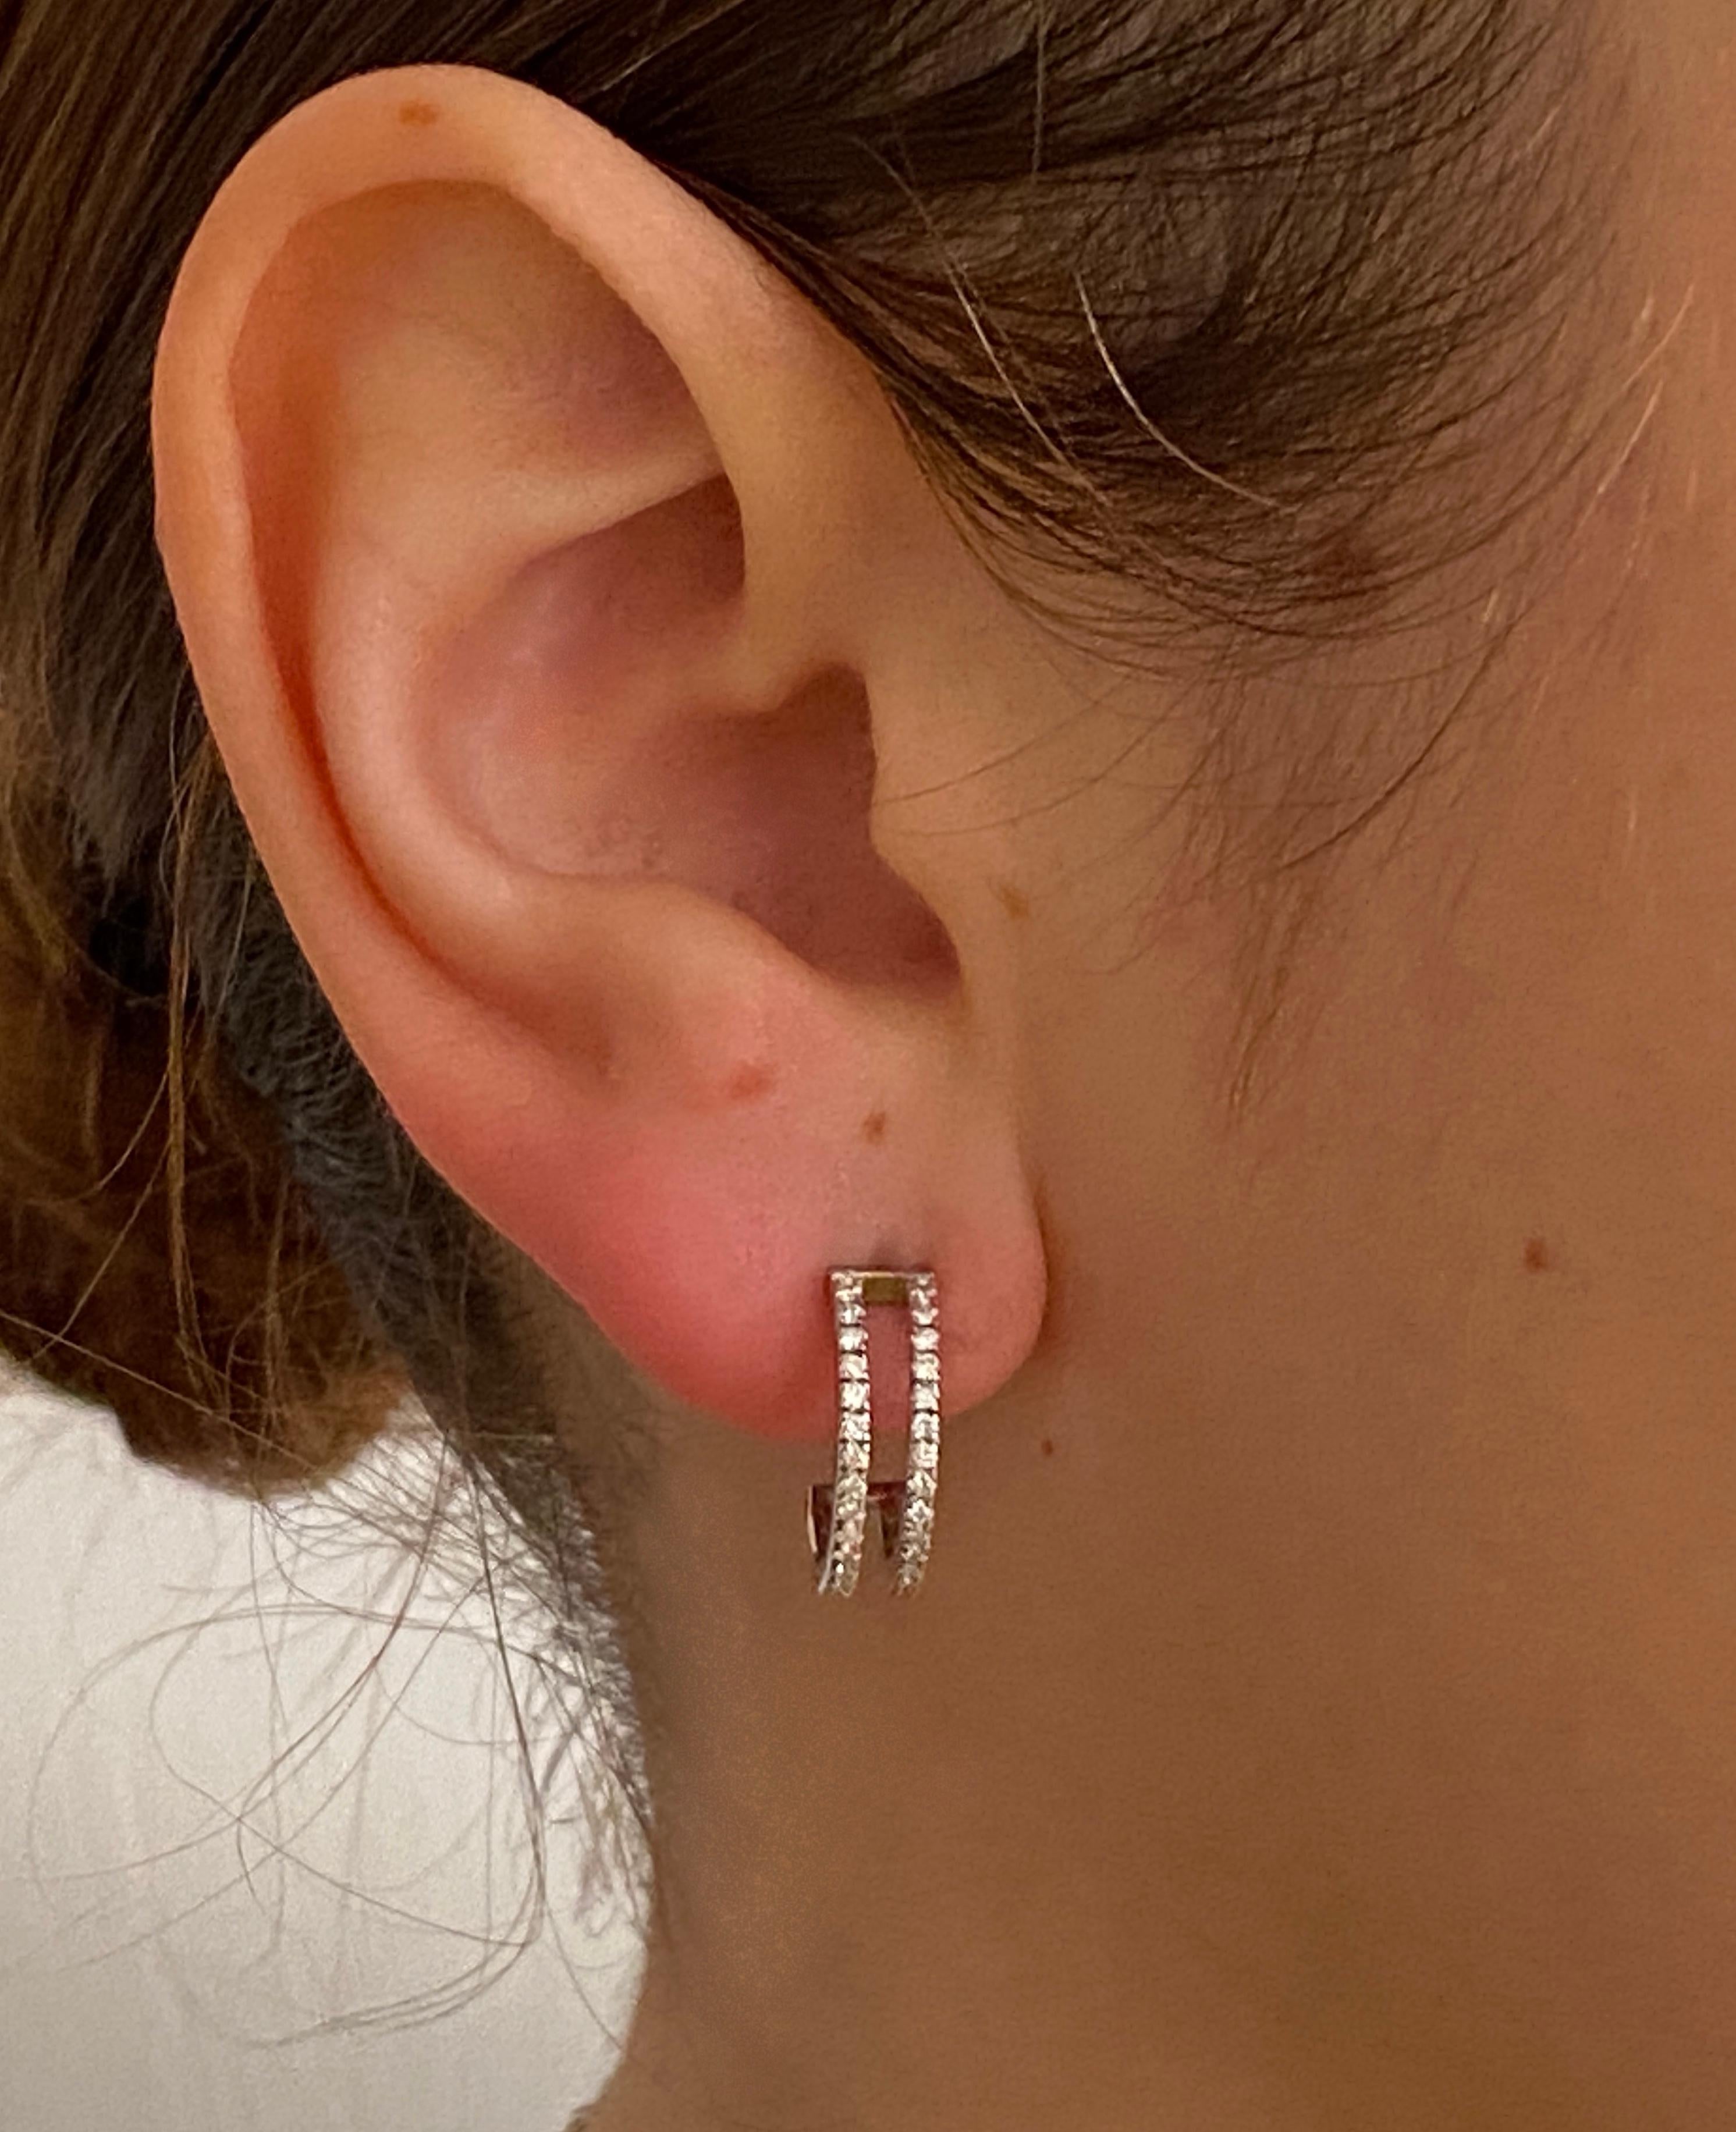 Rossella Ugolini präsentiert diese exquisiten Ohrringe, die in Italien in sorgfältiger Handarbeit aus Platin gefertigt und mit strahlenden weißen Diamanten von 0,80 Karat verziert wurden. Diese atemberaubenden Ohrringe bestehen aus zwei parallelen